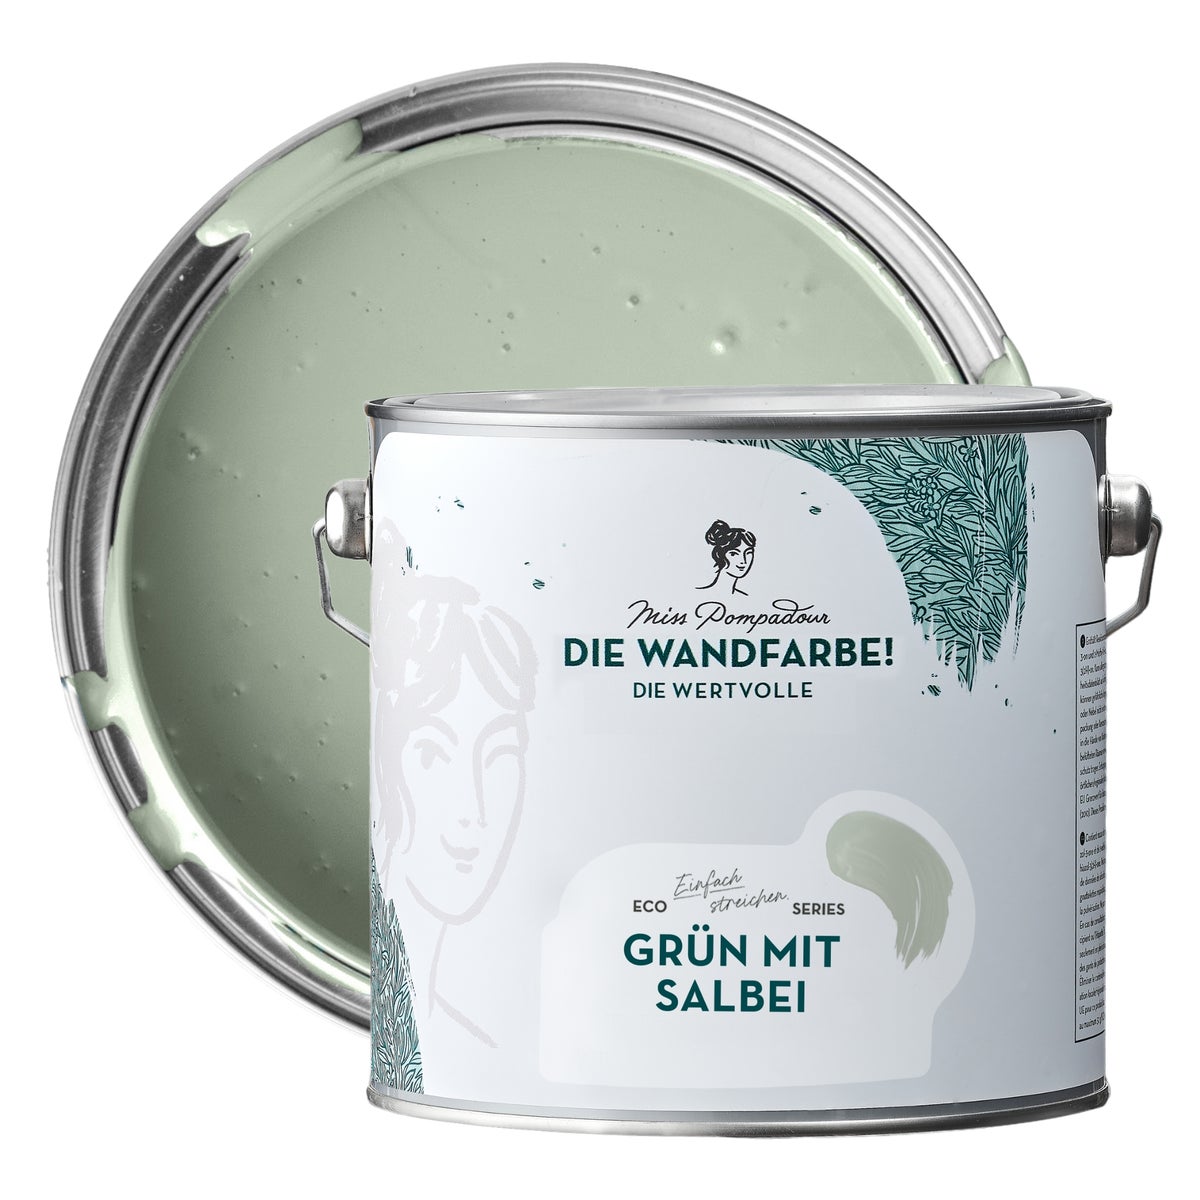 MissPompadour edelmatte Wandfarbe 2.5L Grün mit Salbei - sehr hohe Deckkraft - geruchsneutrale, spritzfreie Farbe - atmungsaktive, wasserbasierte Innenfarbe/Deckenfarbe - Die Wertvolle